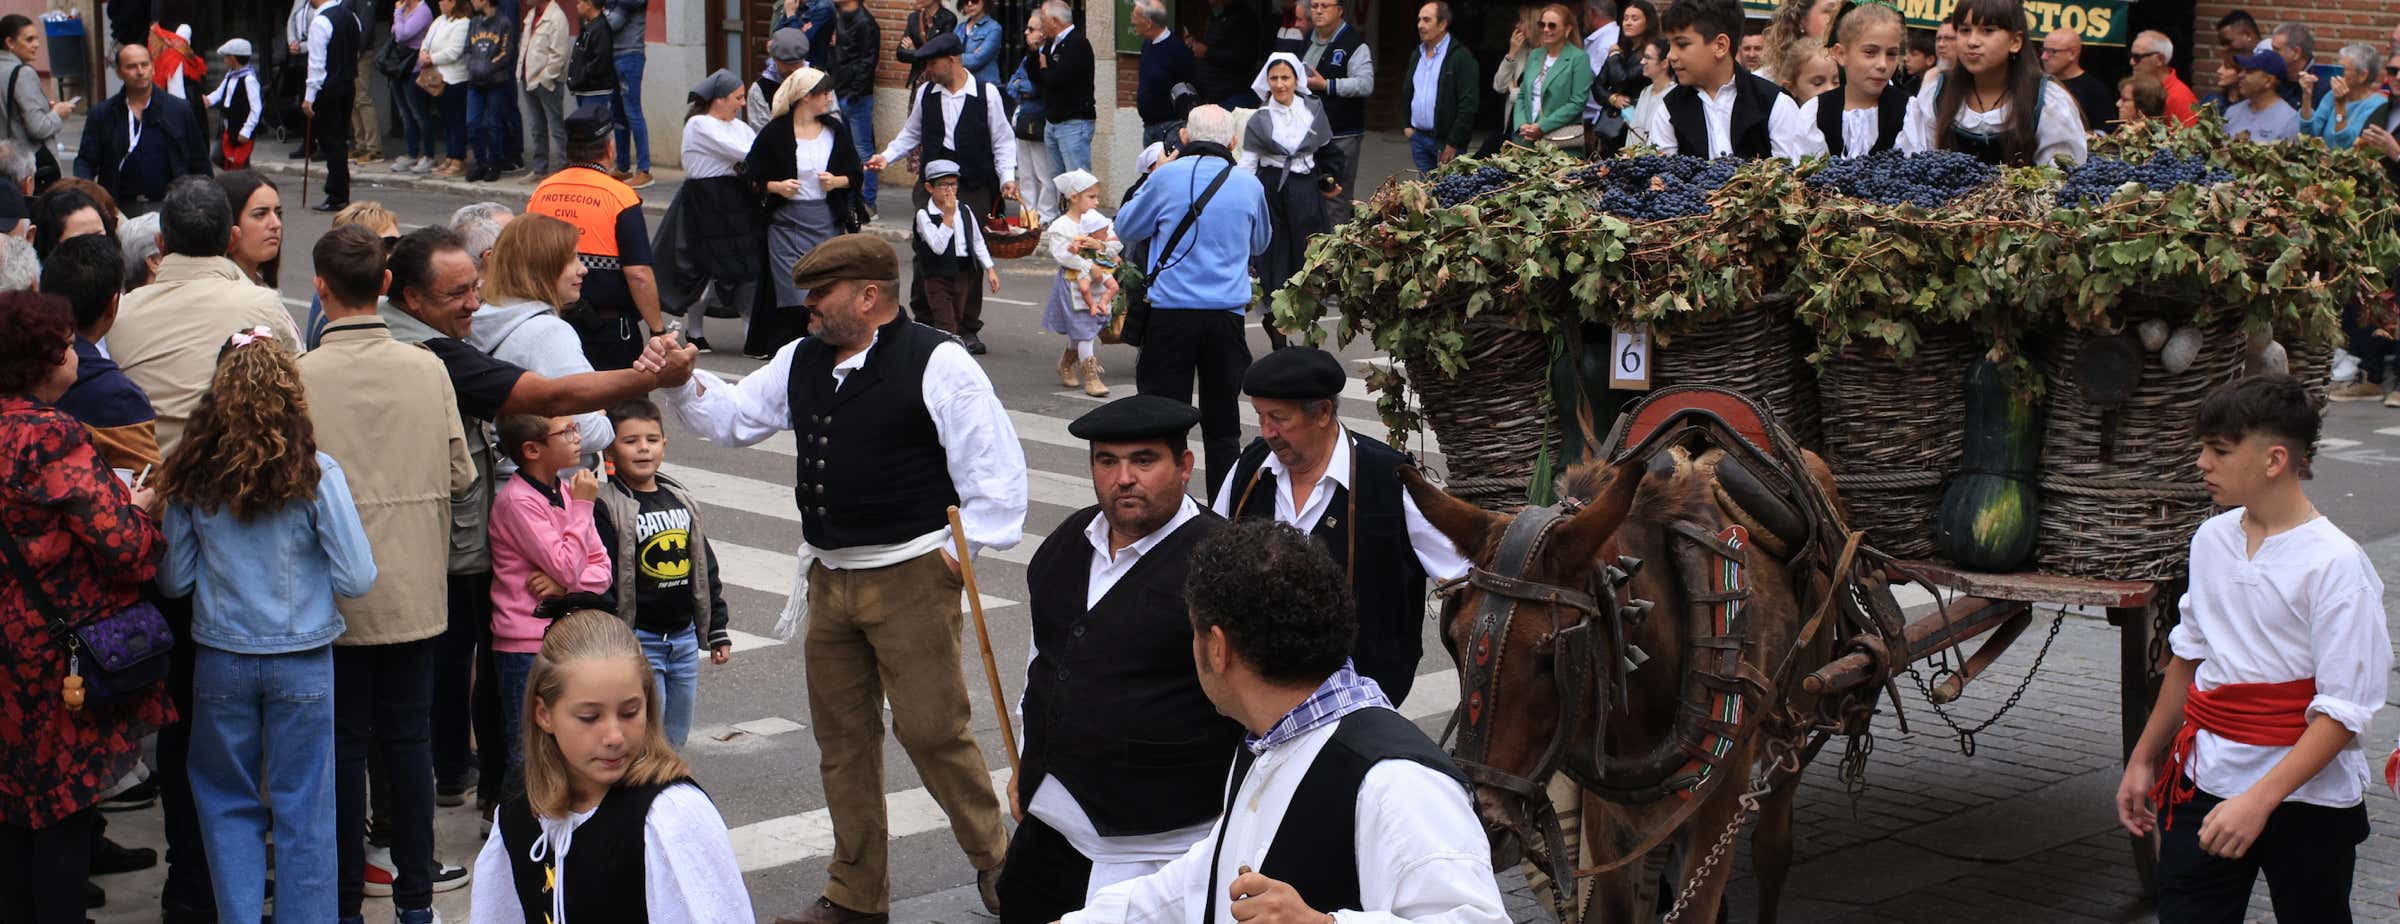 Na sliki so številni slavljenci na festivalu vina in paradi v mestu Toro. Osel vleče tradicionalni leseni voz, poln grozdja in buč.